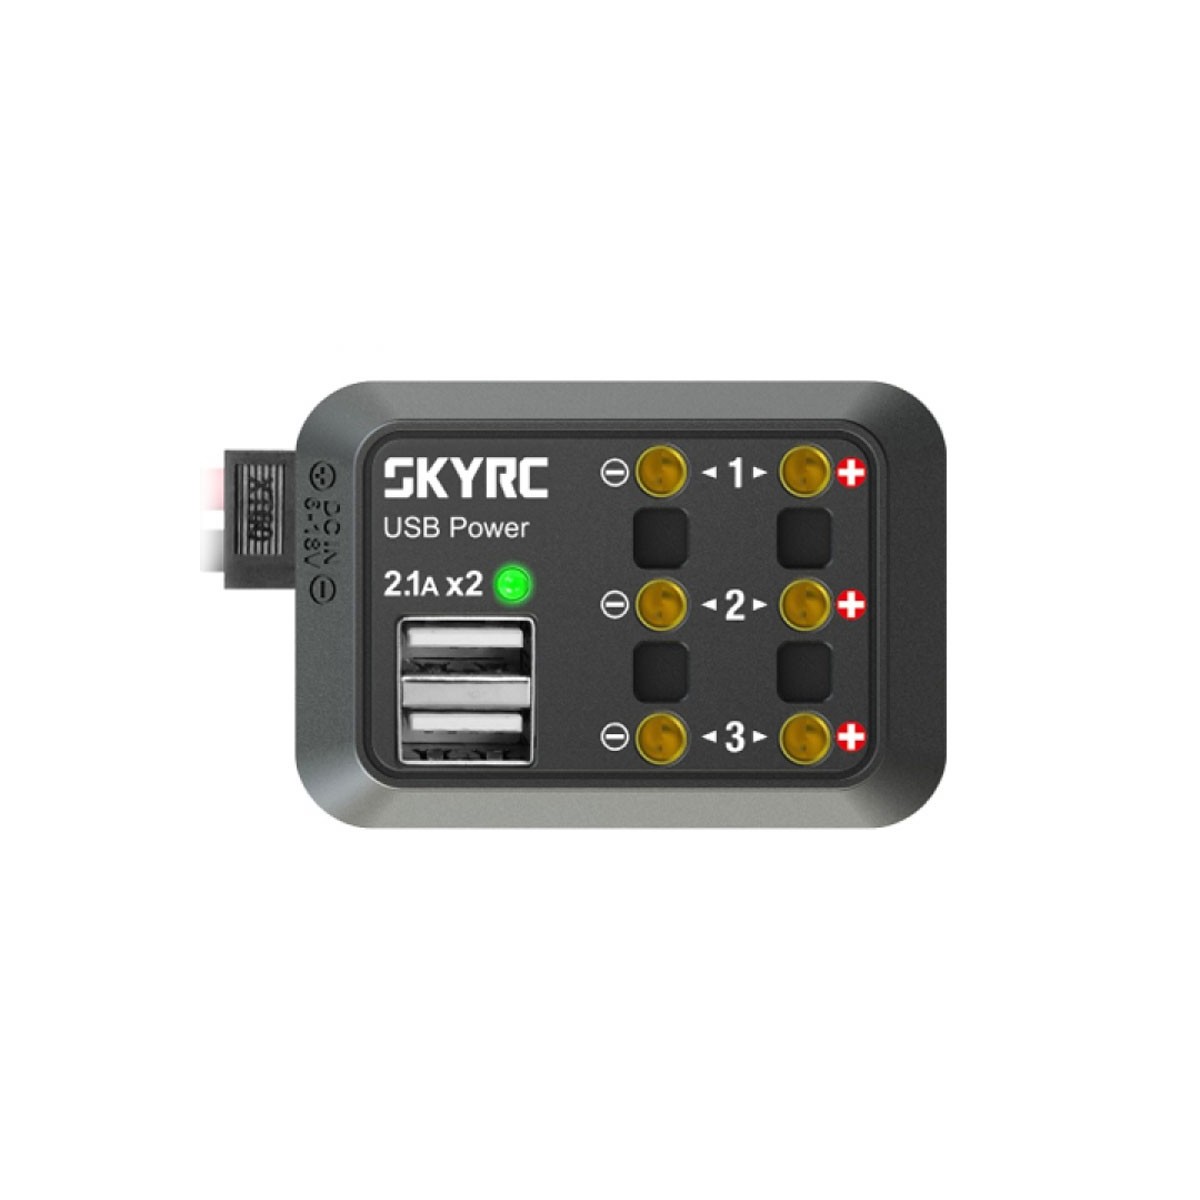 SkyRc Power Distributor-Dual USB 5V 2.1A